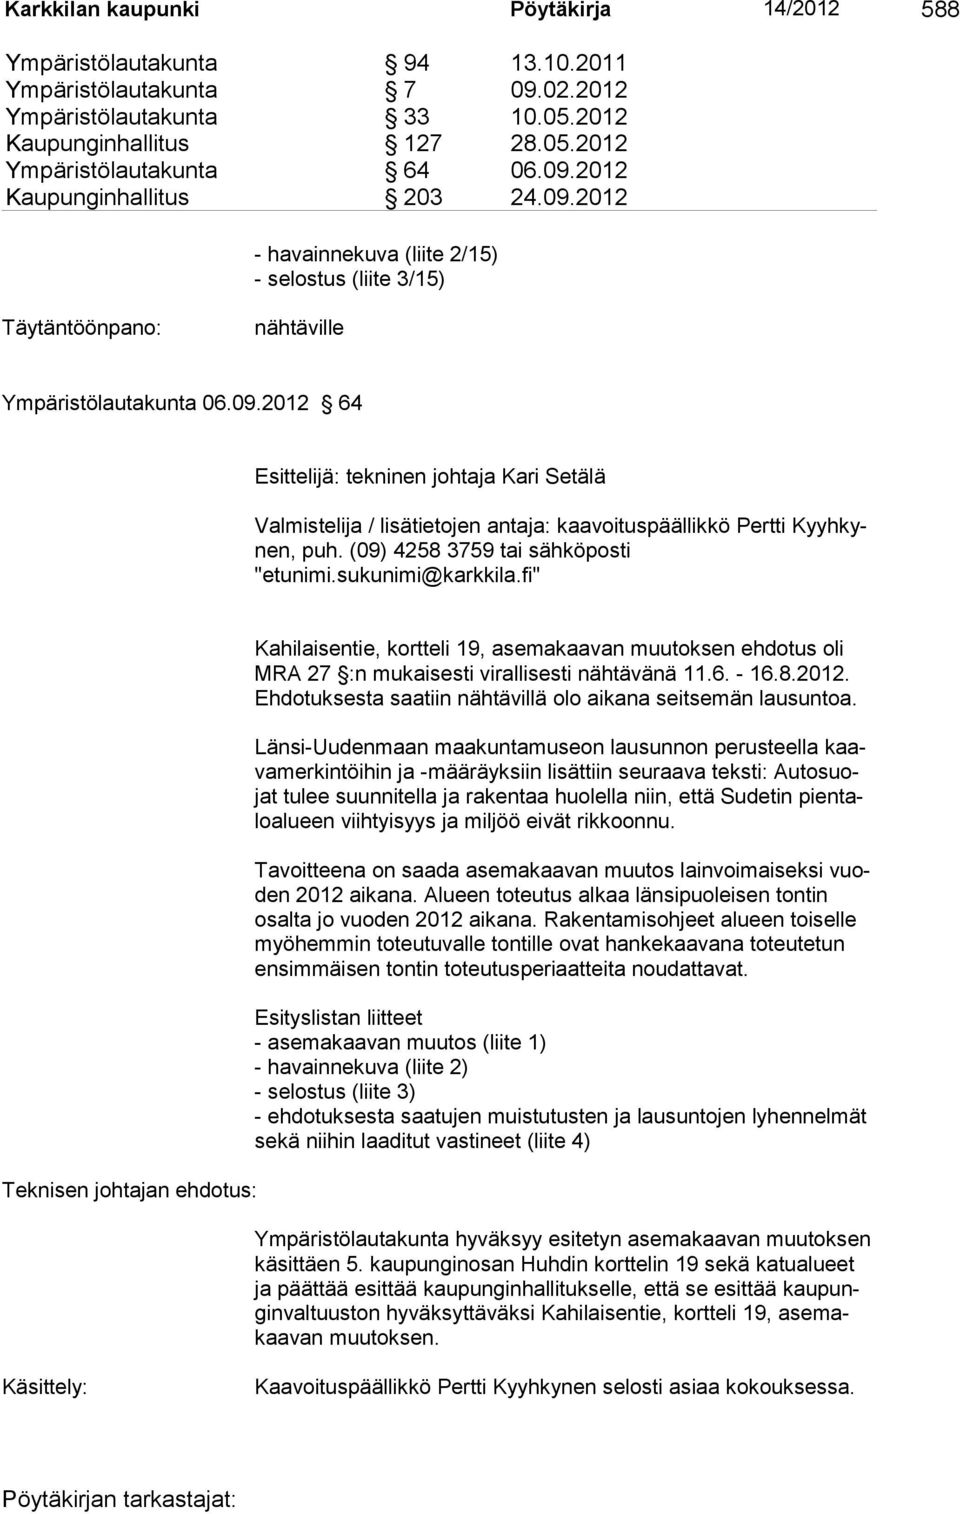 (09) 4258 3759 tai sähköposti "etunimi.sukunimi@karkkila.fi" Teknisen johtajan ehdotus: Kahilaisentie, kortteli 19, asemakaavan muutoksen ehdotus oli MRA 27 :n mukaisesti virallisesti nähtävänä 11.6.